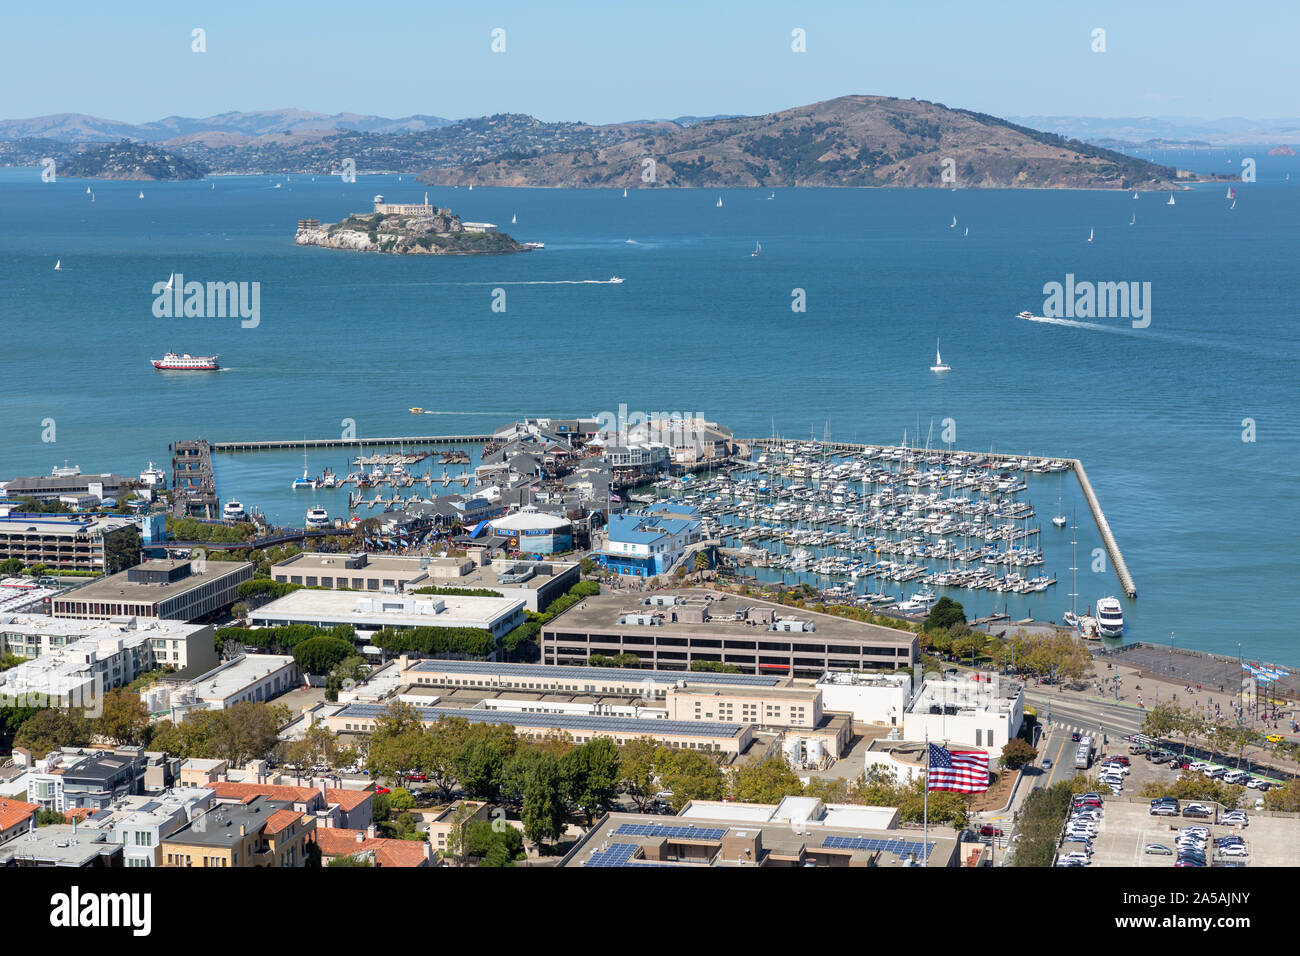 SAN FRANCISCO, USA - 8 septembre 2019 : Haute vue sur le front de mer de la ville y compris Marina Pier 39, Alcatraz et Angel Island dans la baie de San Francisco. Banque D'Images